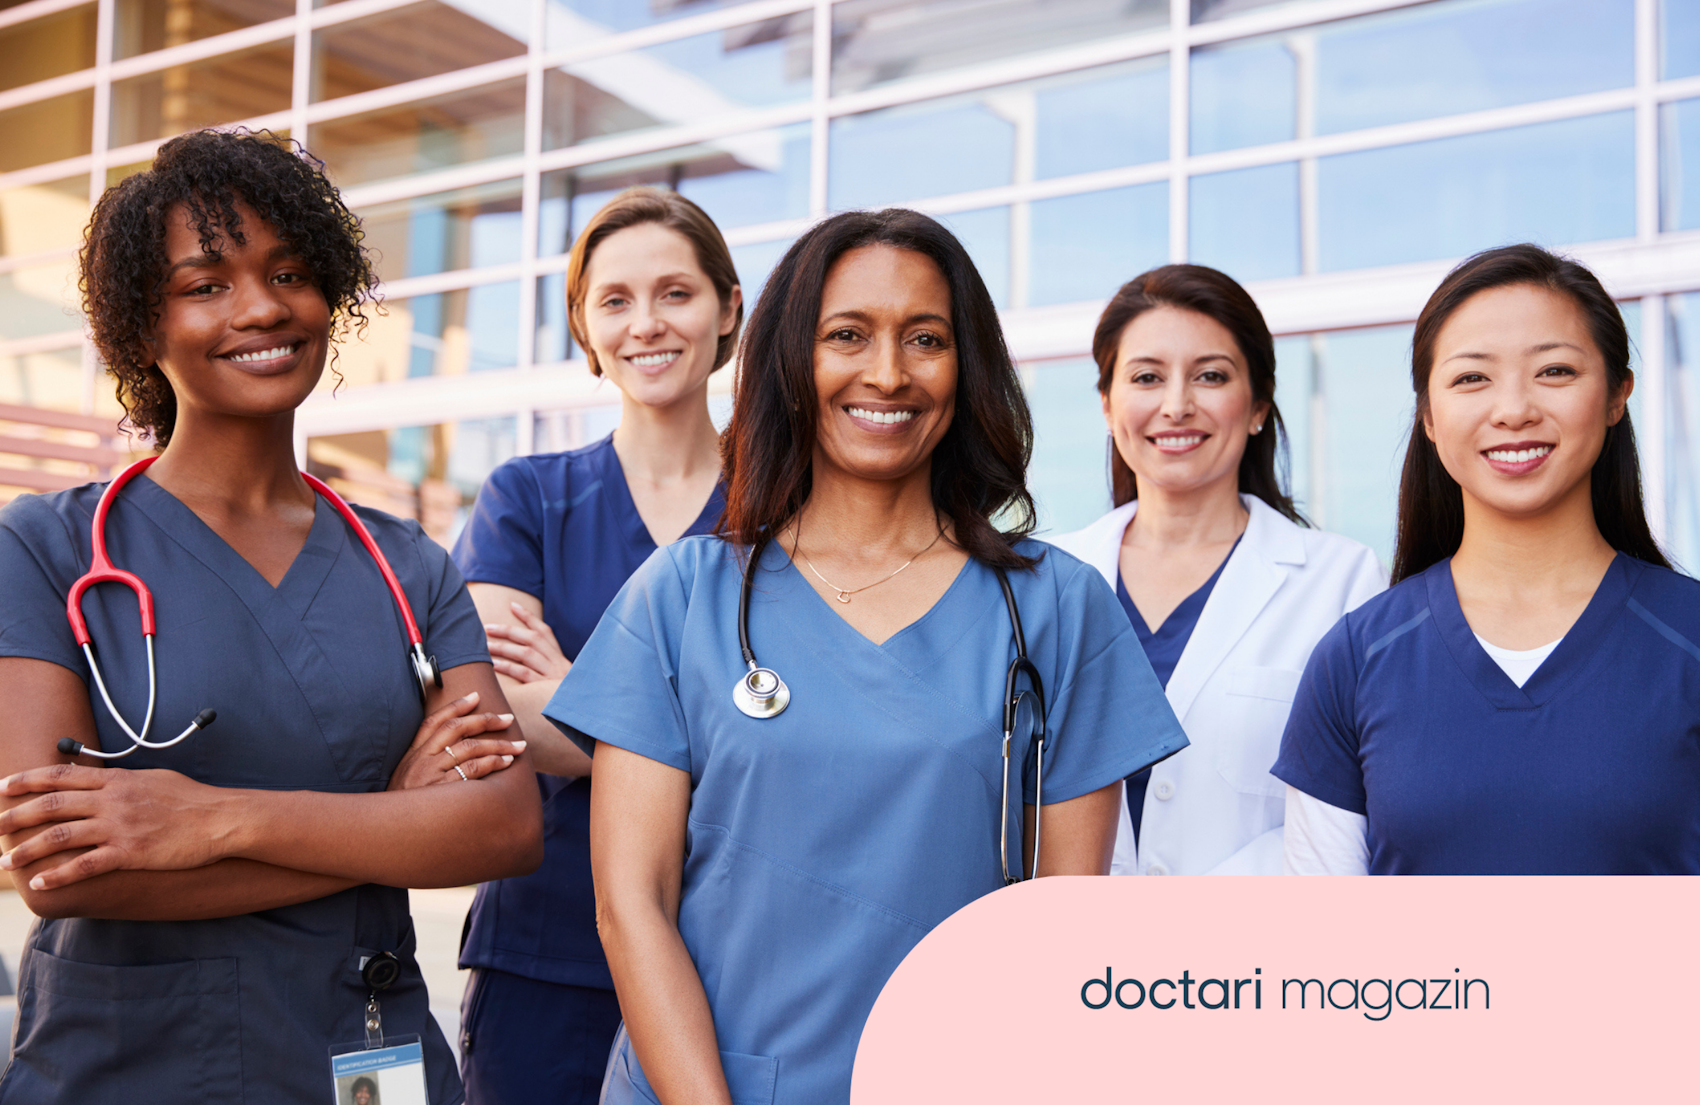 Fünf Frauen in blauen Kitteln und teilweise mit Stethoskop lächeln in die Kamera